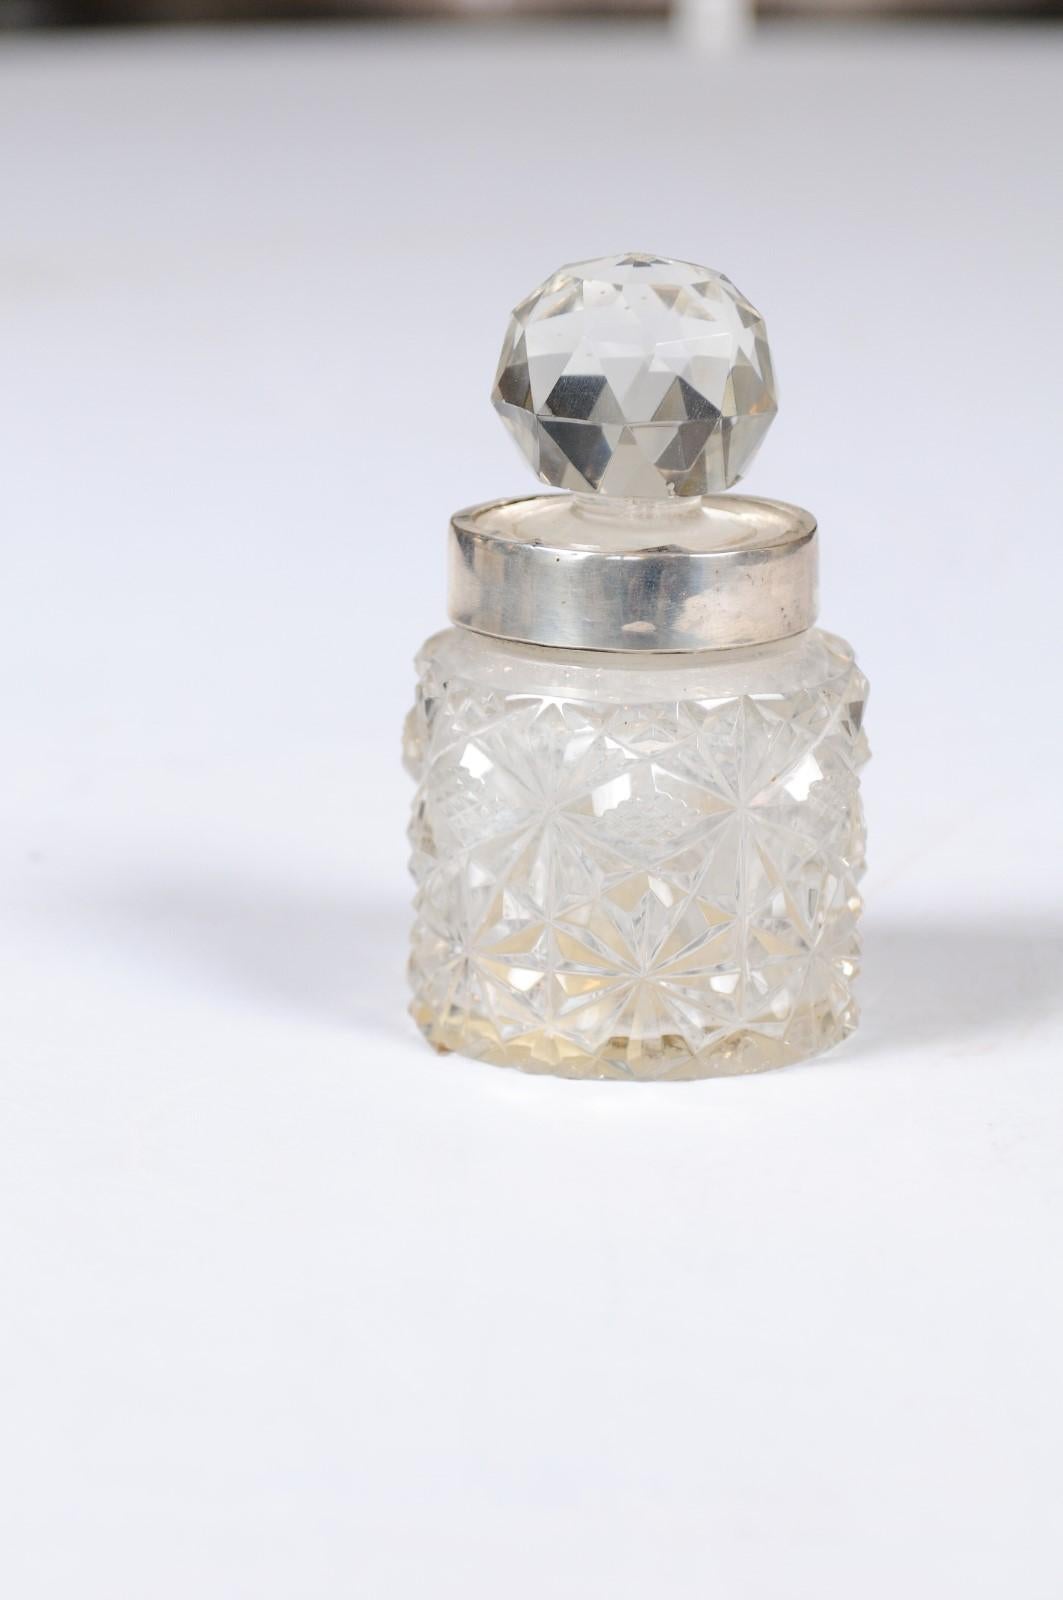 Ein kleiner englischer Kristallkrug aus dem 19. Jahrhundert mit silbernem Hals und rundem, facettiertem Verschluss. Dieser hübsche, zierliche Krug, der im 19. Jahrhundert in England entstand, hat einen runden Körper, der mit rautenförmigen Motiven